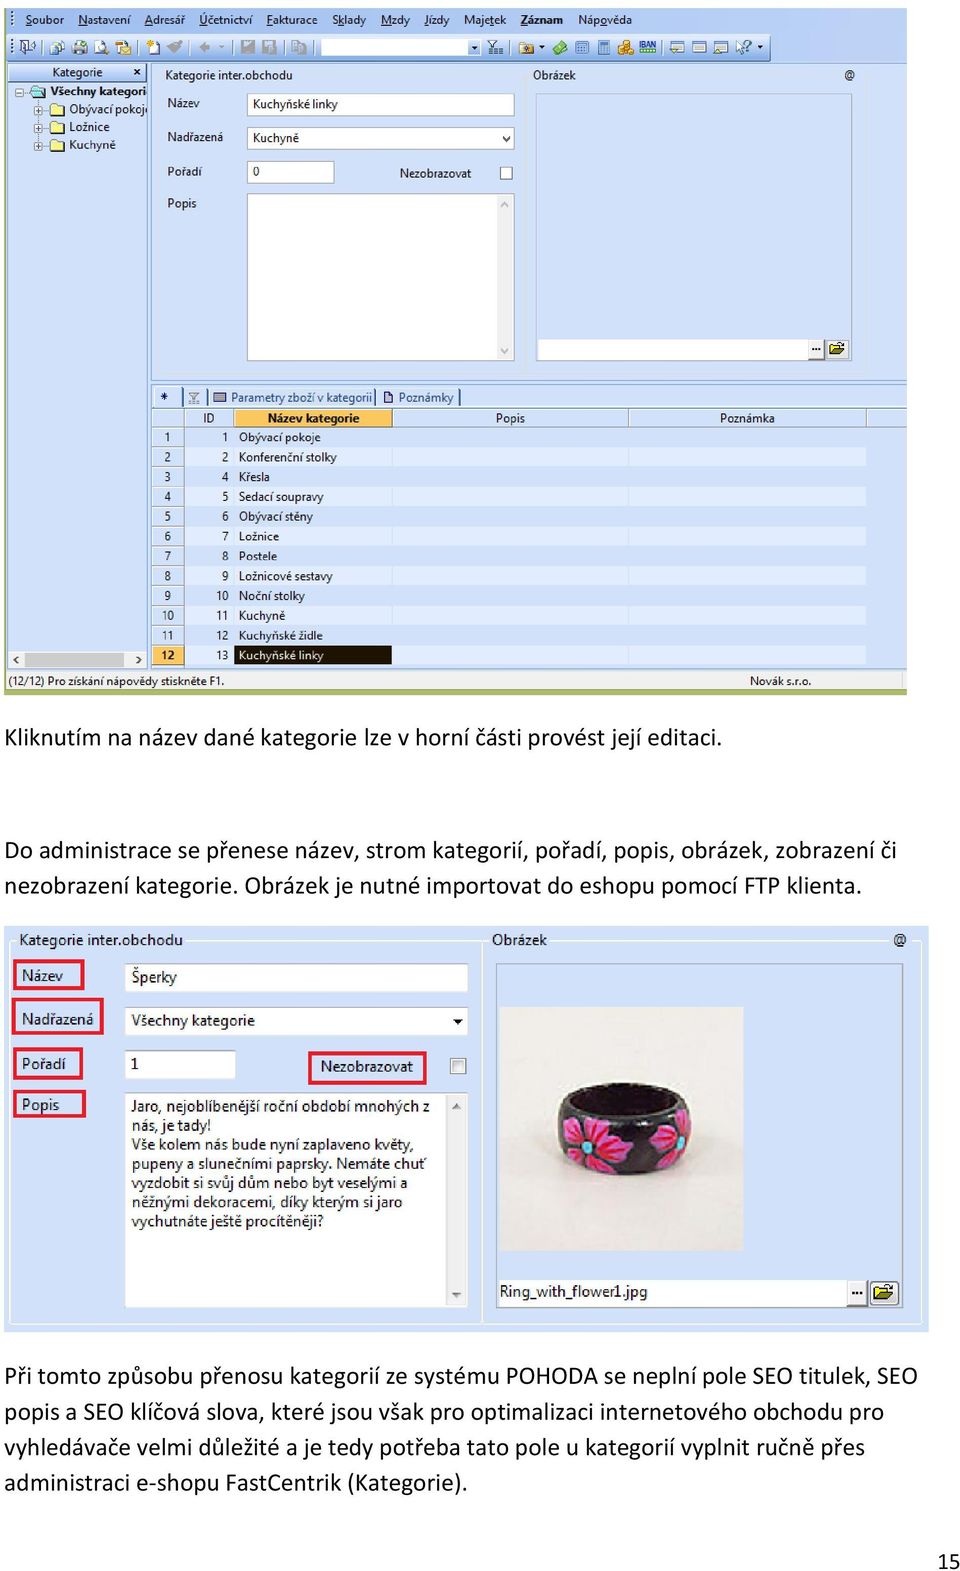 Obrázek je nutné importovat do eshopu pomocí FTP klienta.